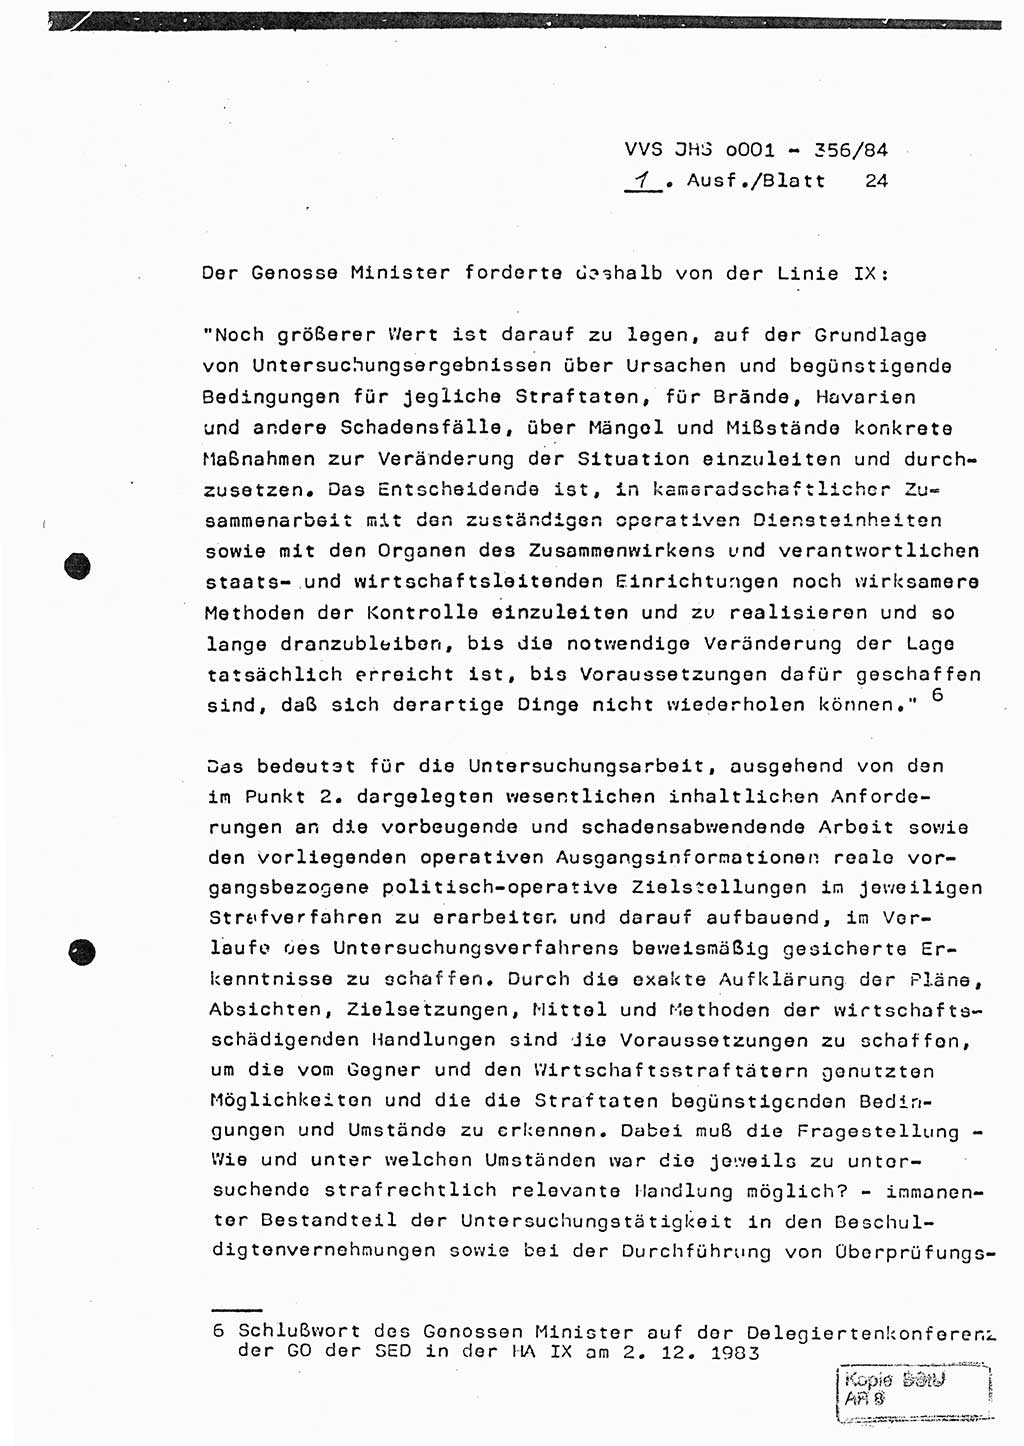 Diplomarbeit, Major Lutz Rahaus (HA Ⅸ/3), Ministerium für Staatssicherheit (MfS) [Deutsche Demokratische Republik (DDR)], Juristische Hochschule (JHS), Vertrauliche Verschlußsache (VVS) o001-356/84, Potsdam 1984, Seite 24 (Dipl.-Arb. MfS DDR JHS VVS o001-356/84 1984, S. 24)